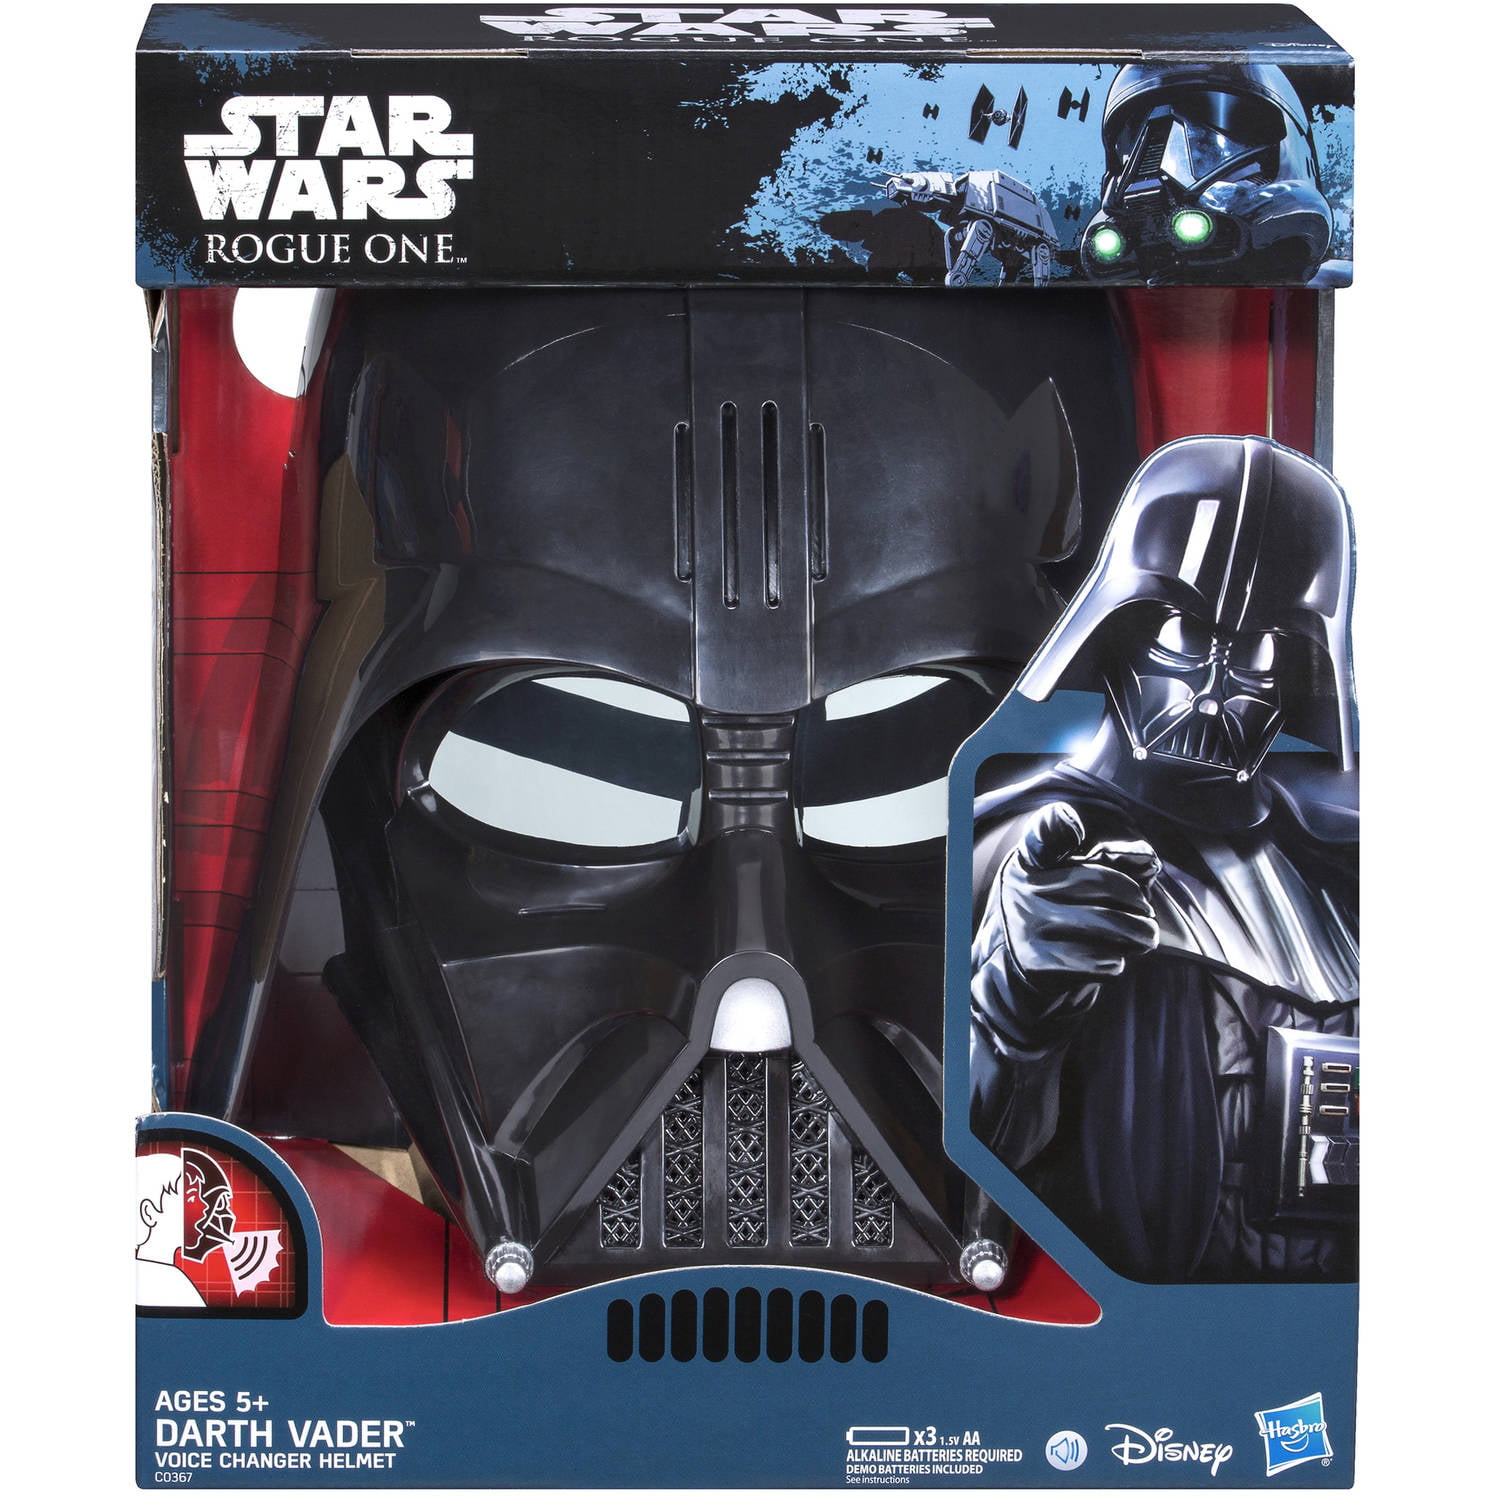 Star Wars Boys E7 Darth Vader Voice Changer Helmet 